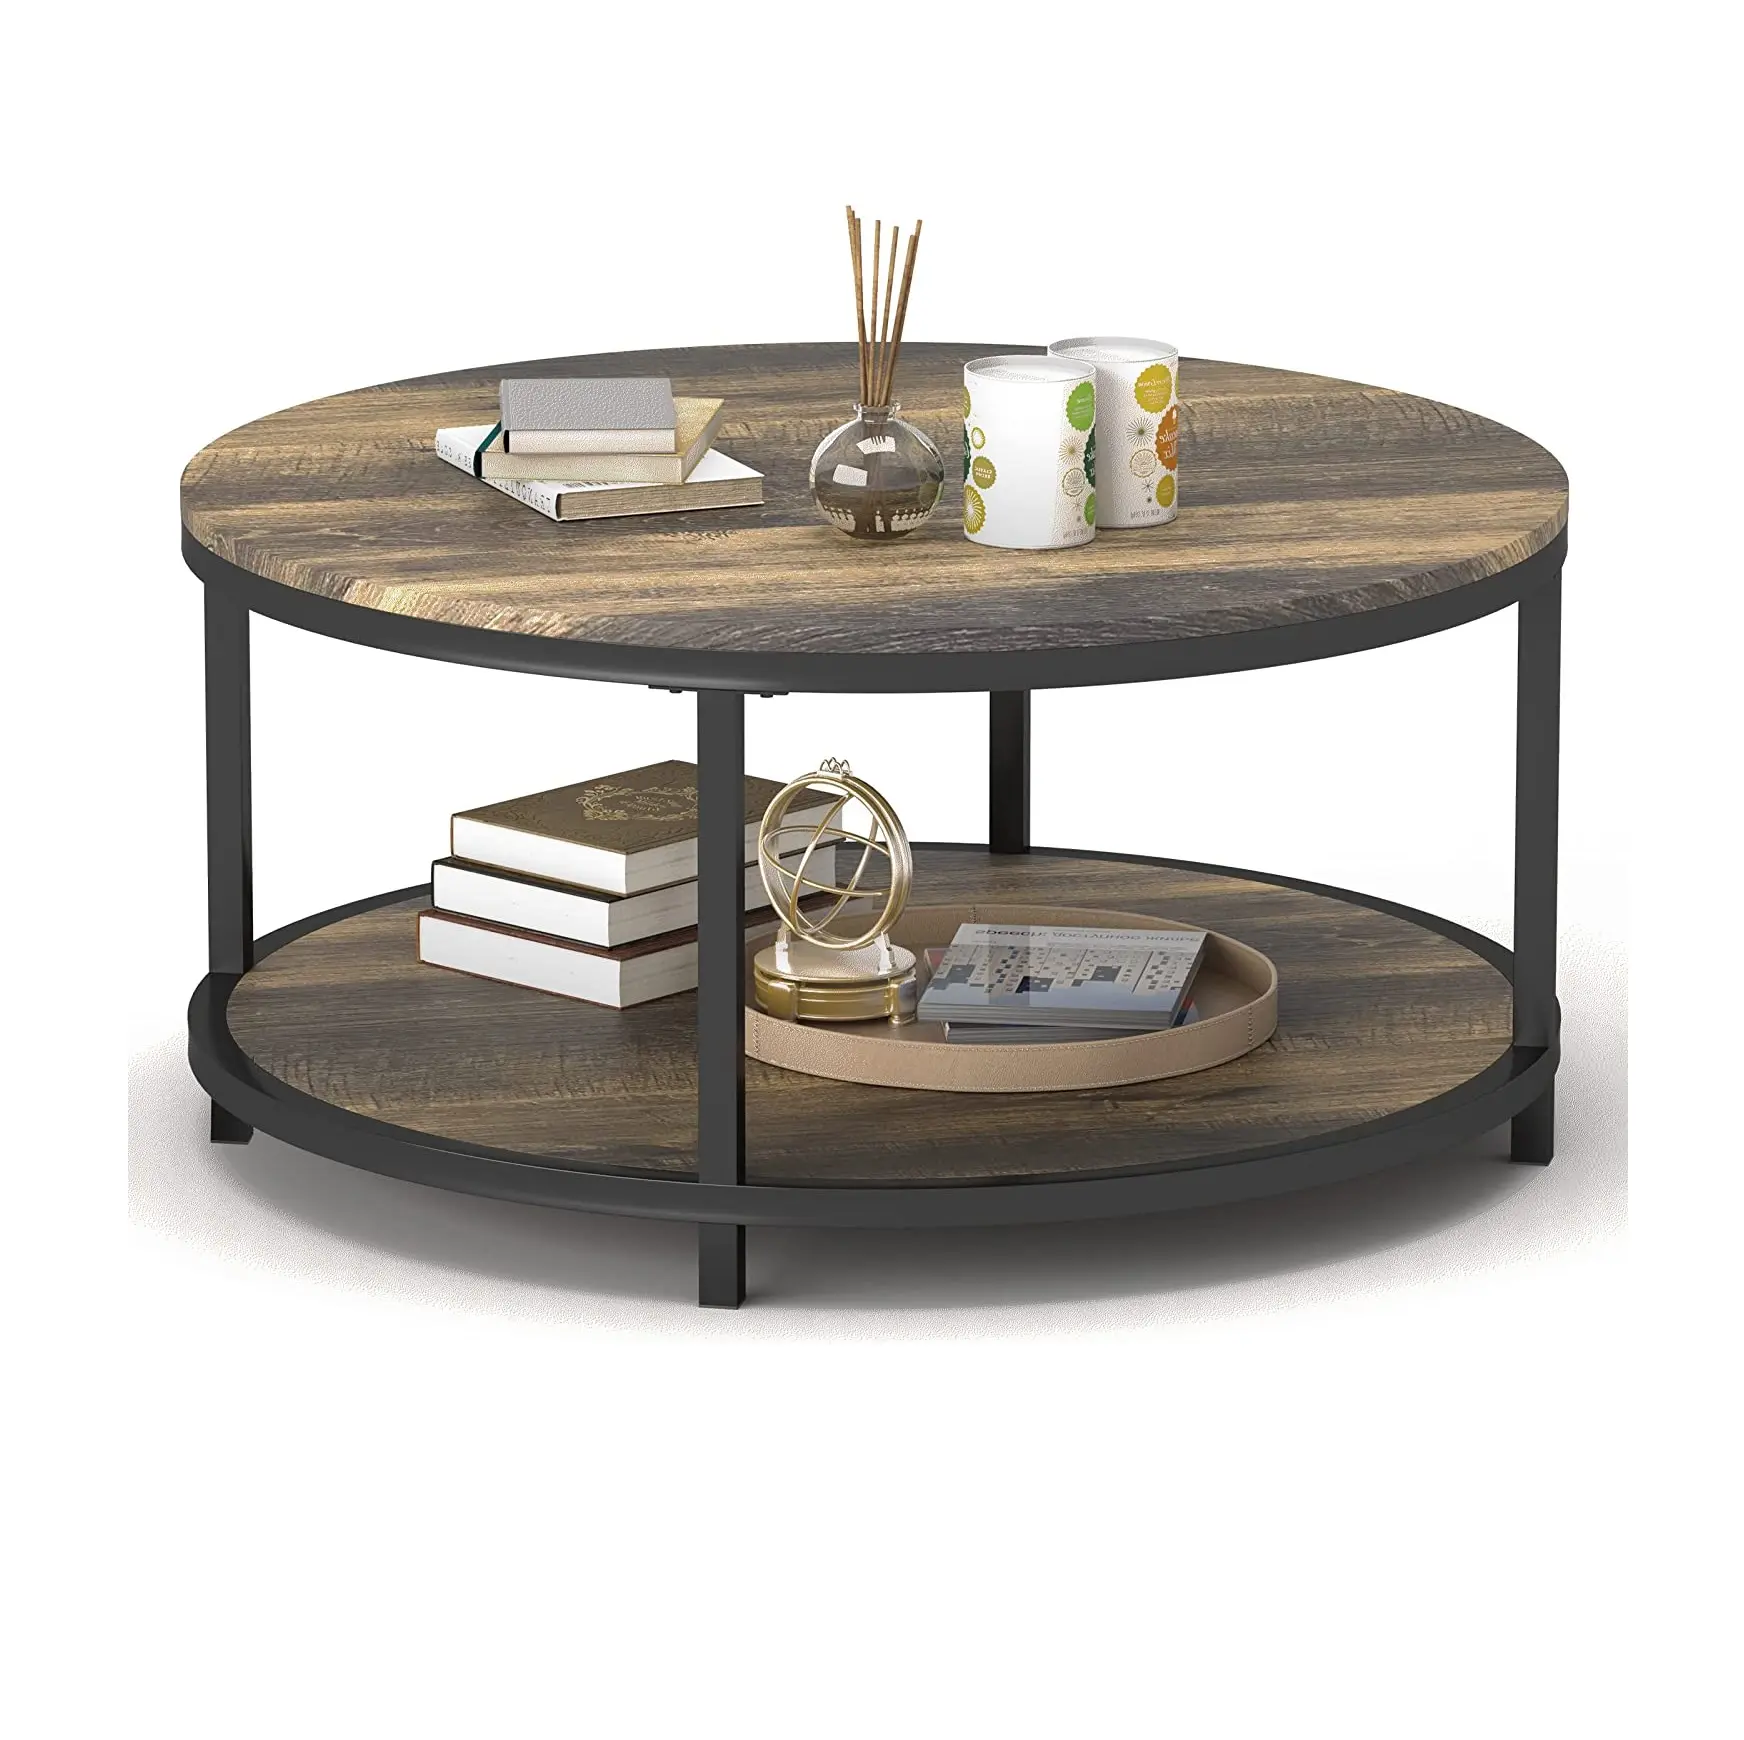 라운드 커피 테이블 소박한 빈티지 산업 디자인 가구 튼튼한 금속 프레임 다리 소파 테이블 칵테일 테이블